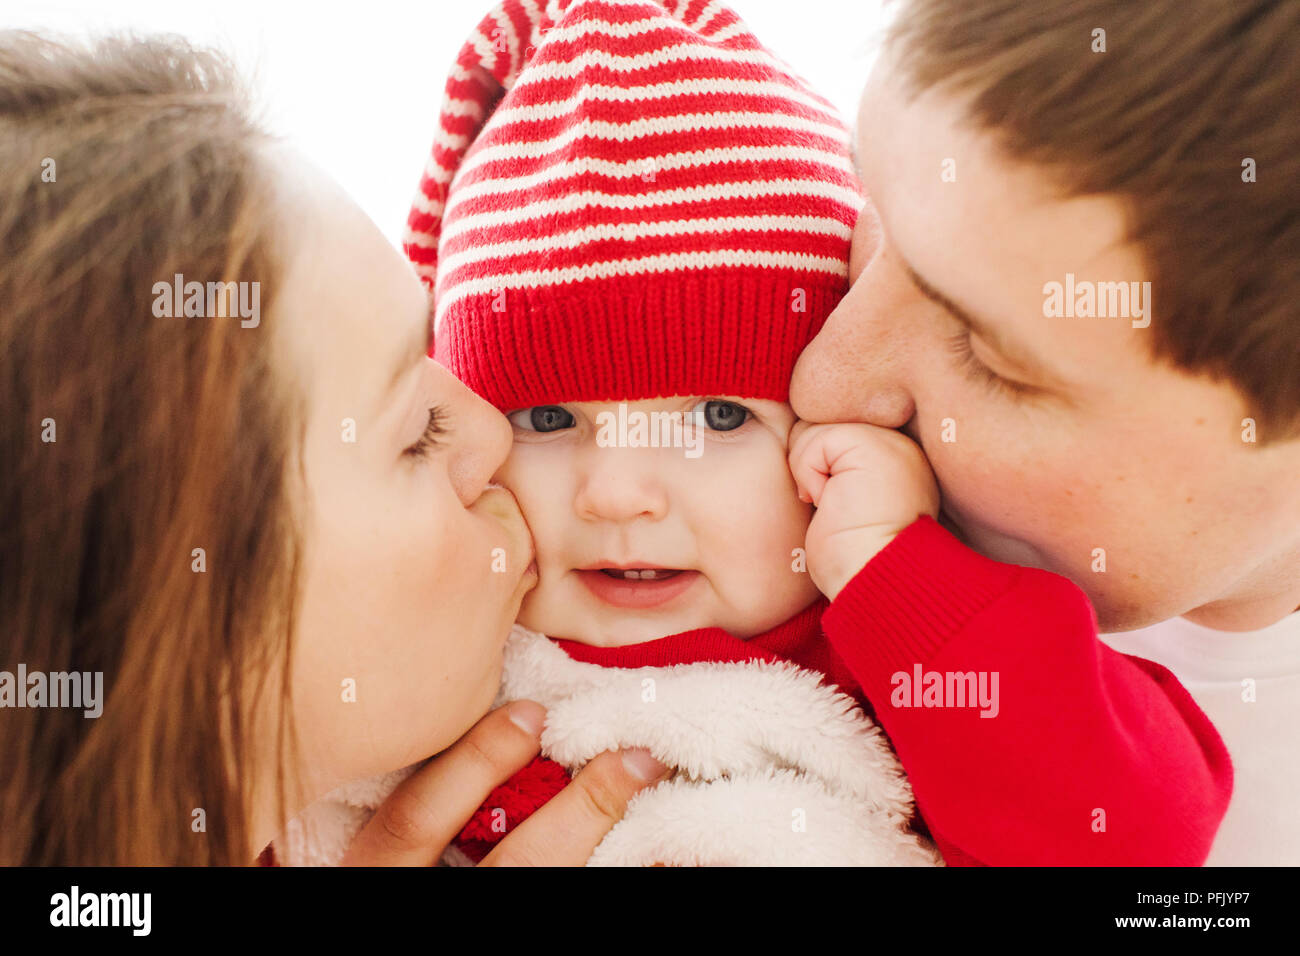 Los padres del bebé besos en mejillas Foto de stock